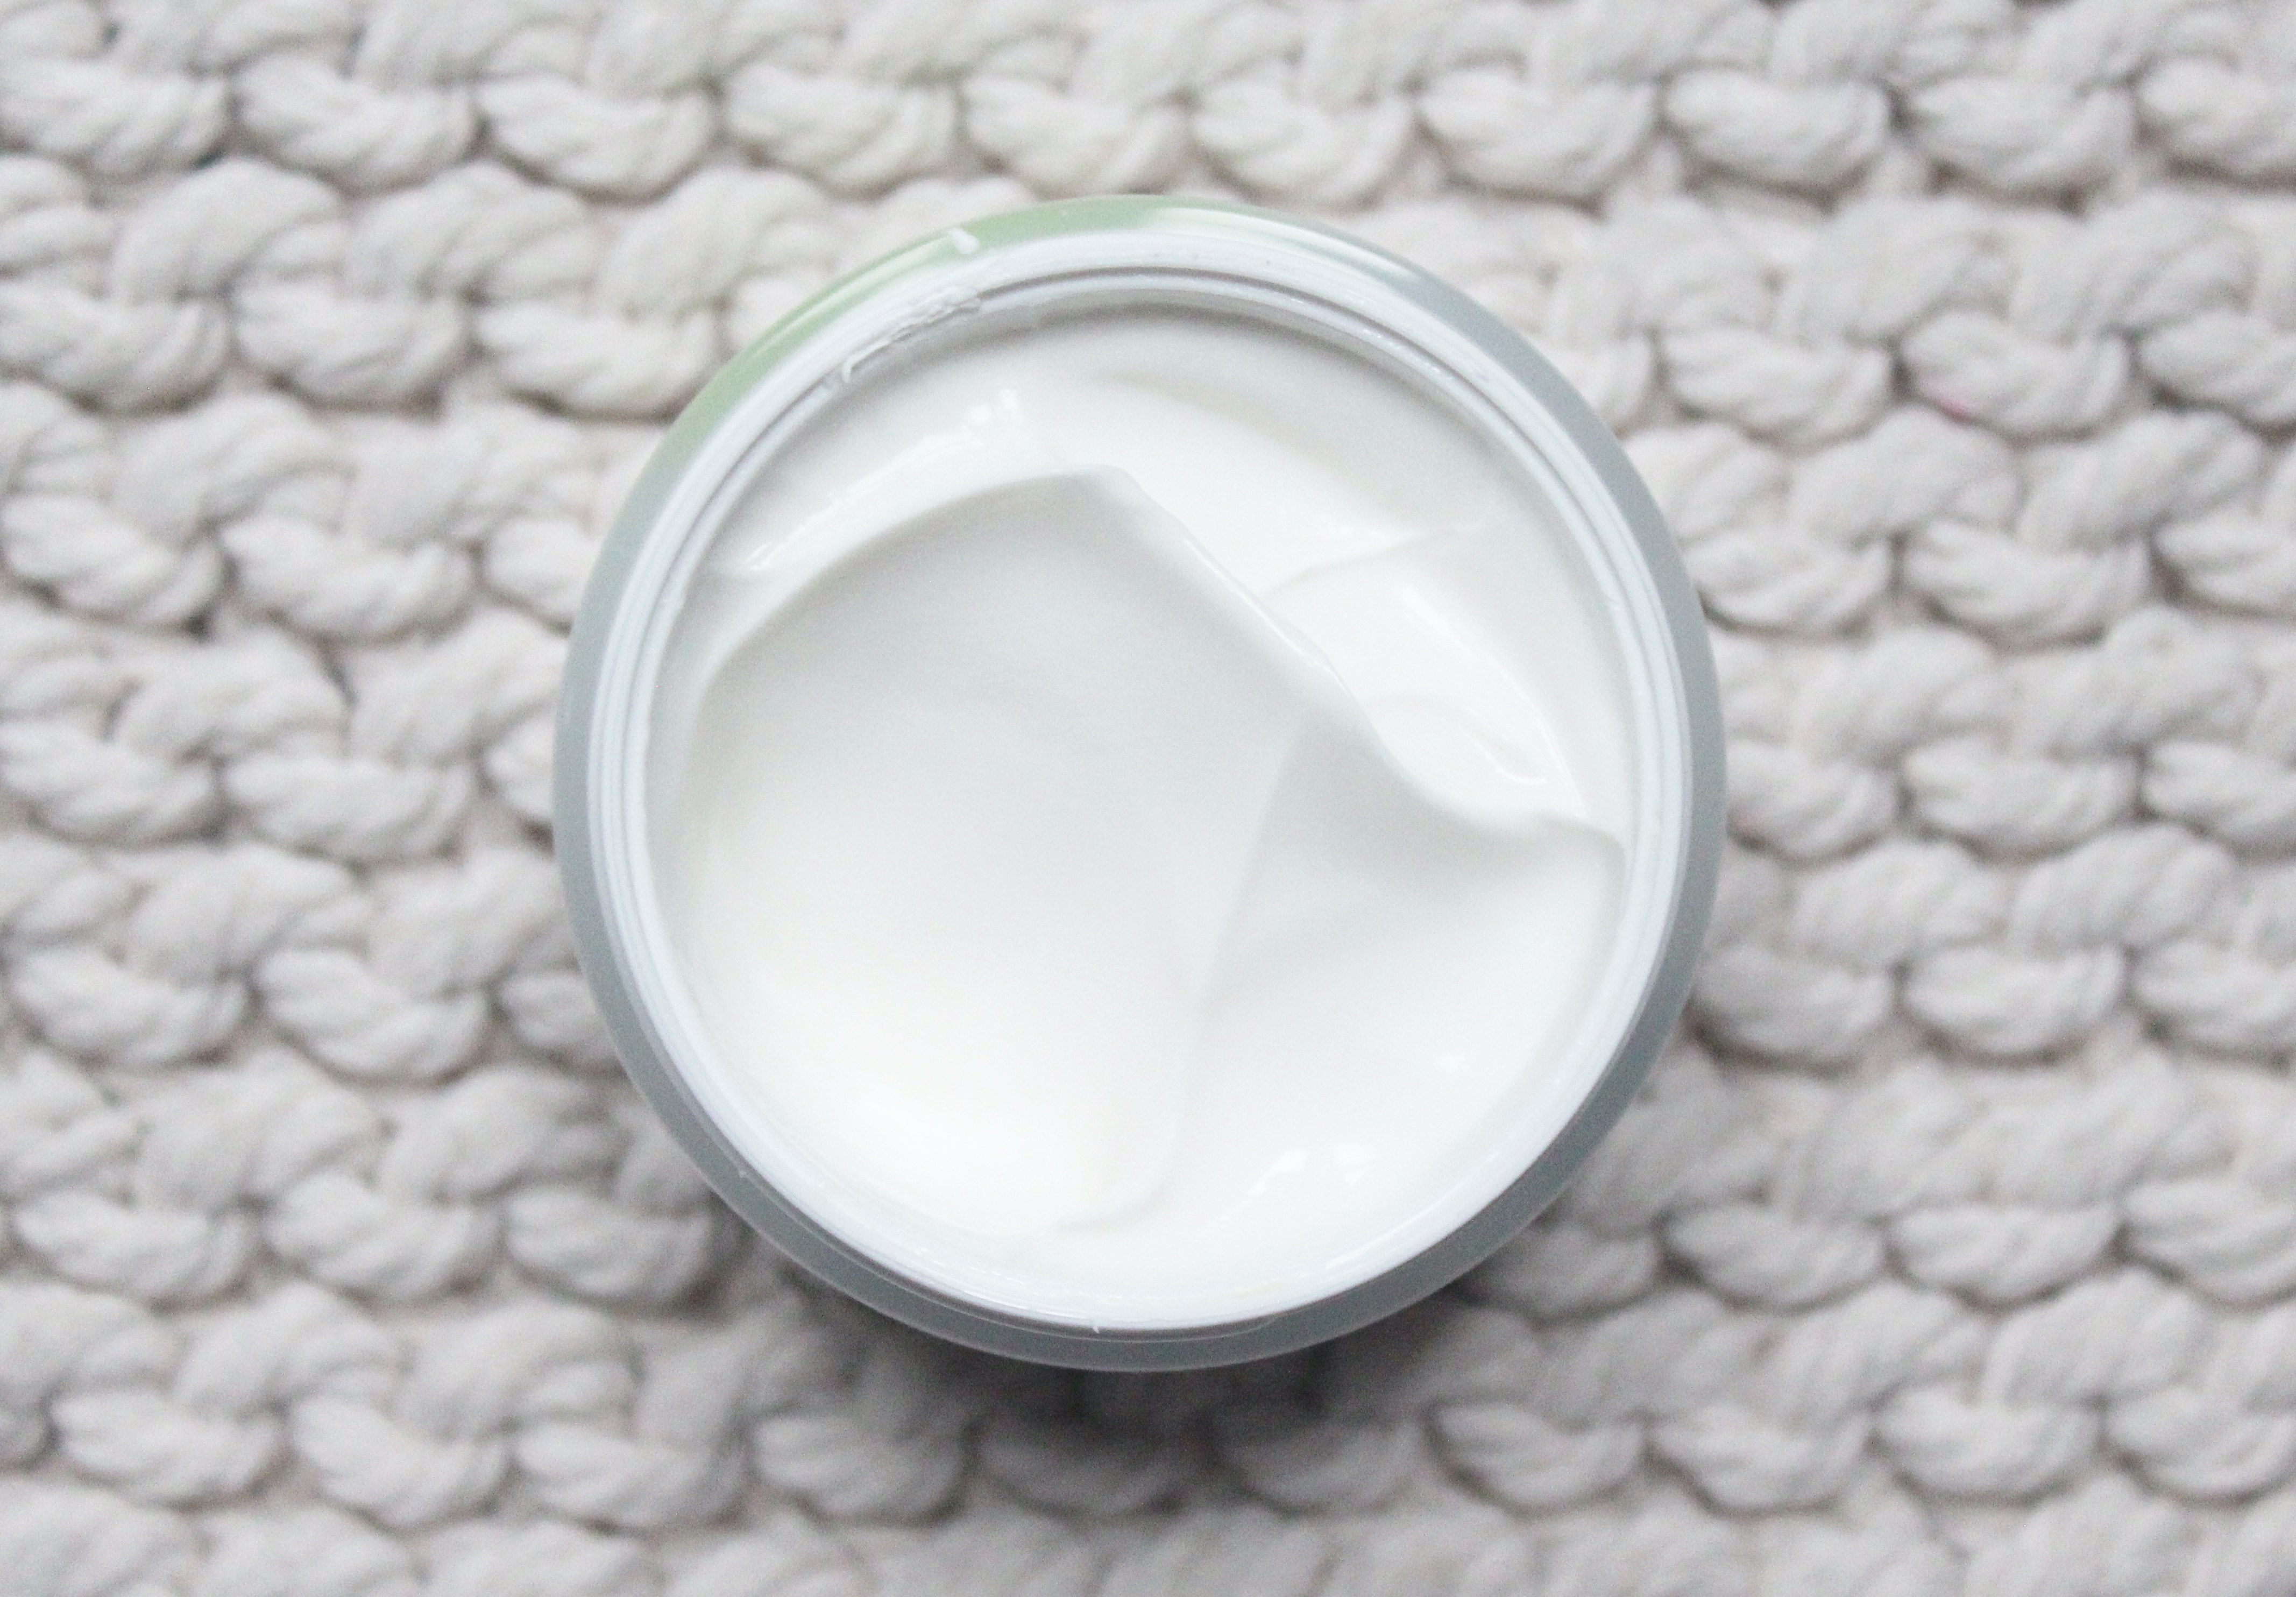 COSRX Centella Blemish Cream Review